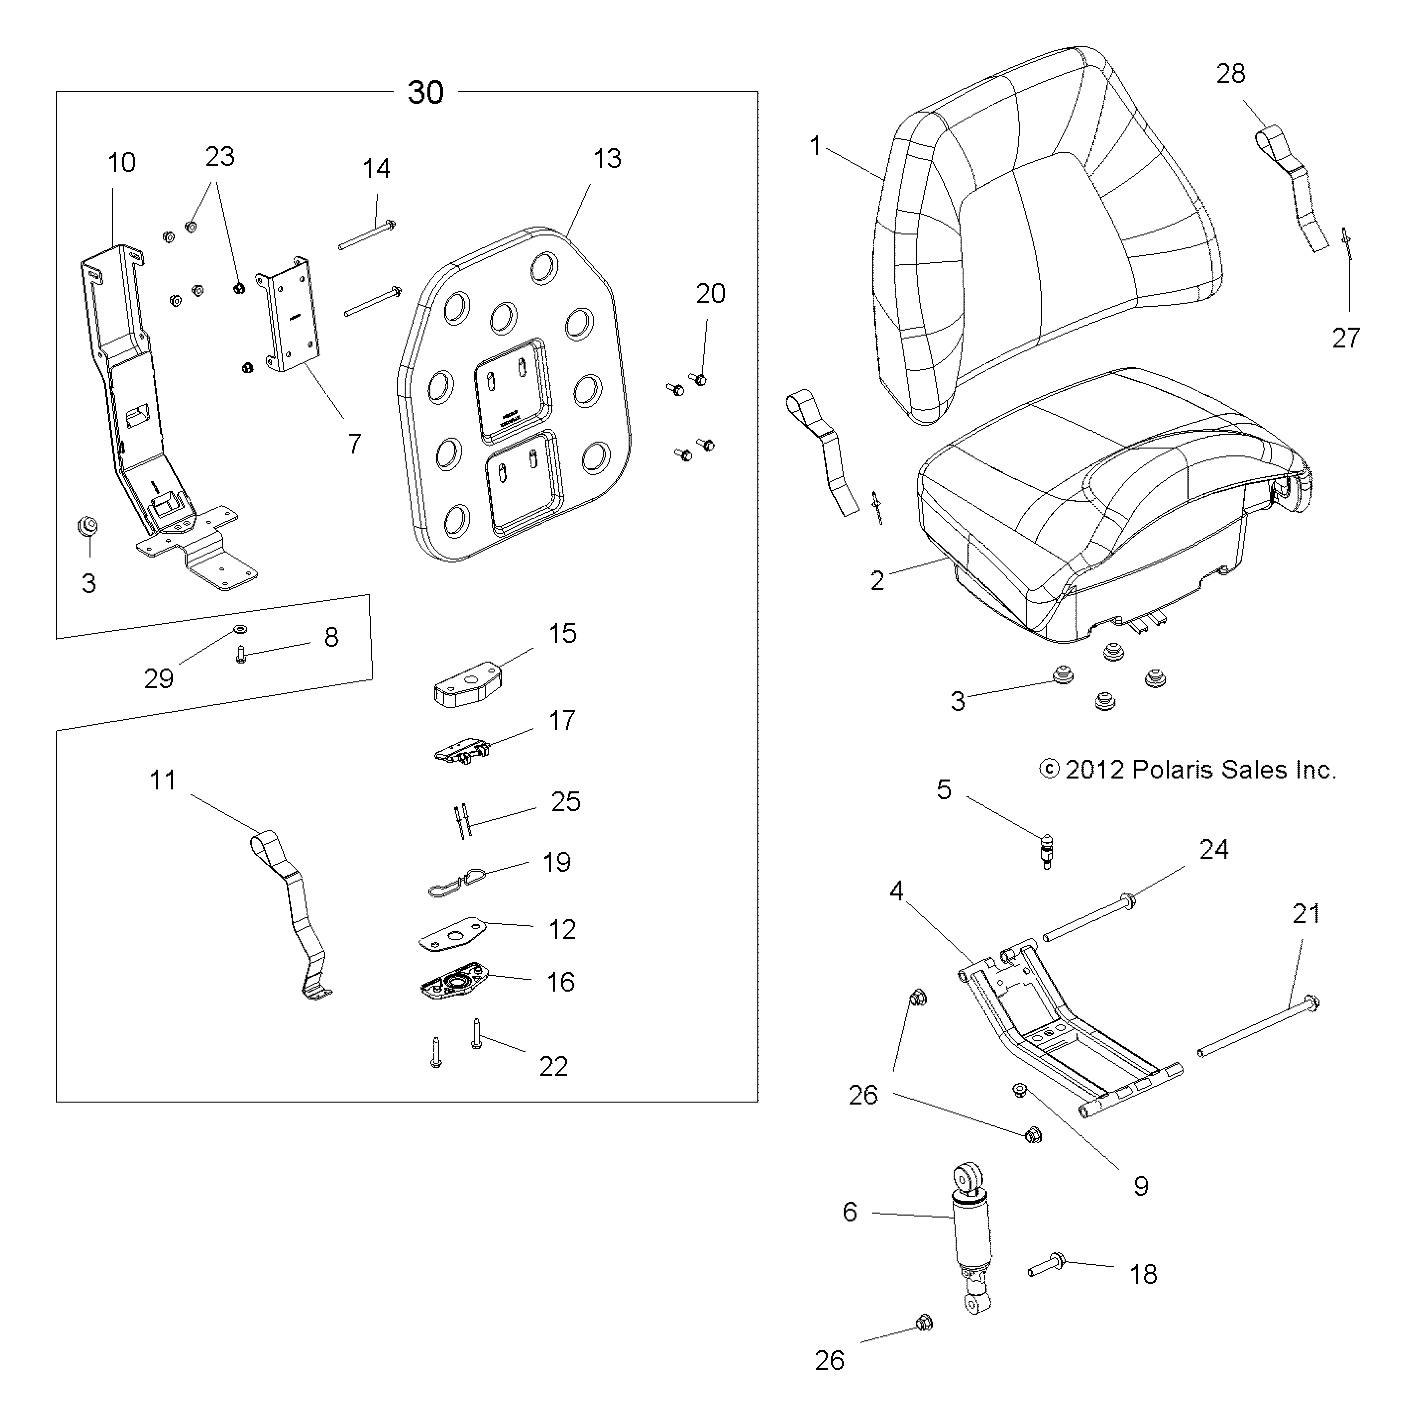 Foto diagrama Polaris que contem a peça 5437121